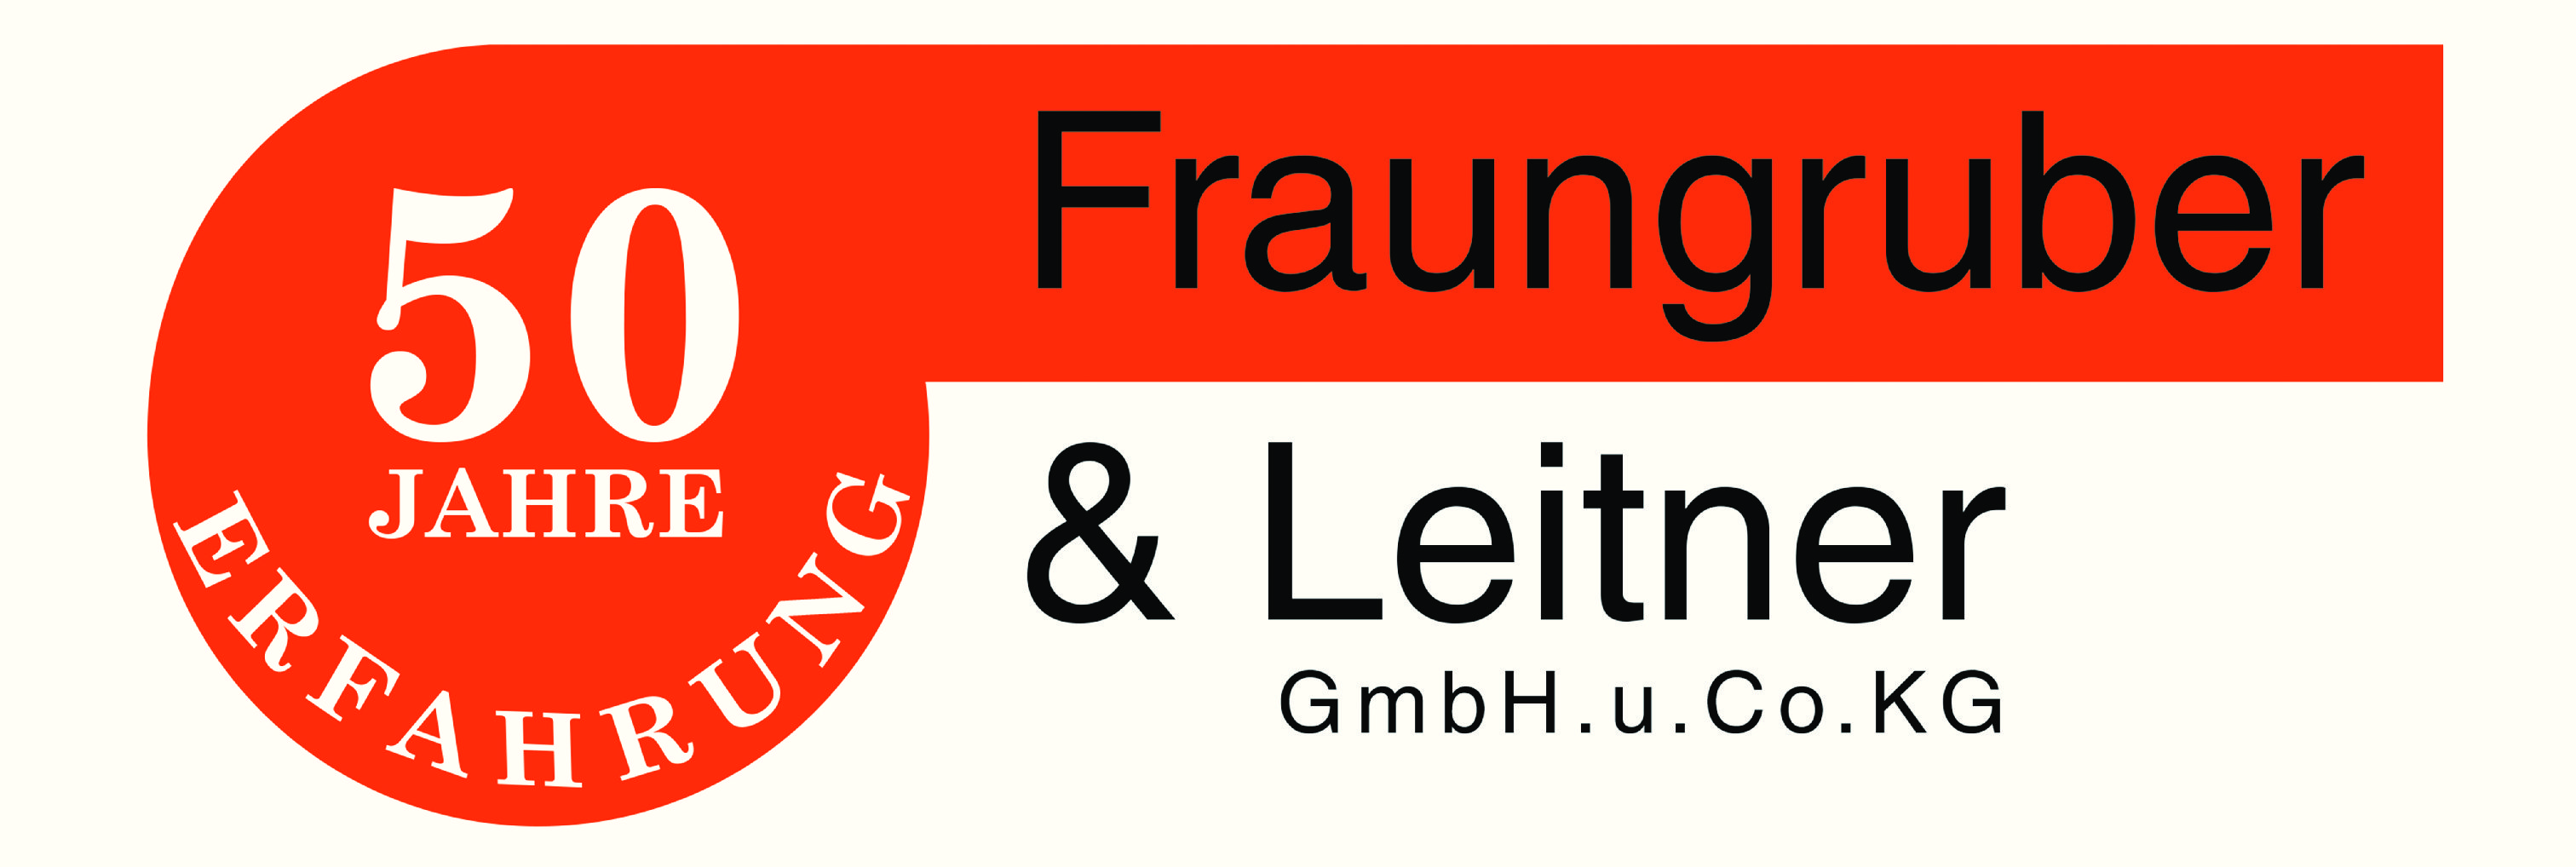 Fraungruber & Leitner